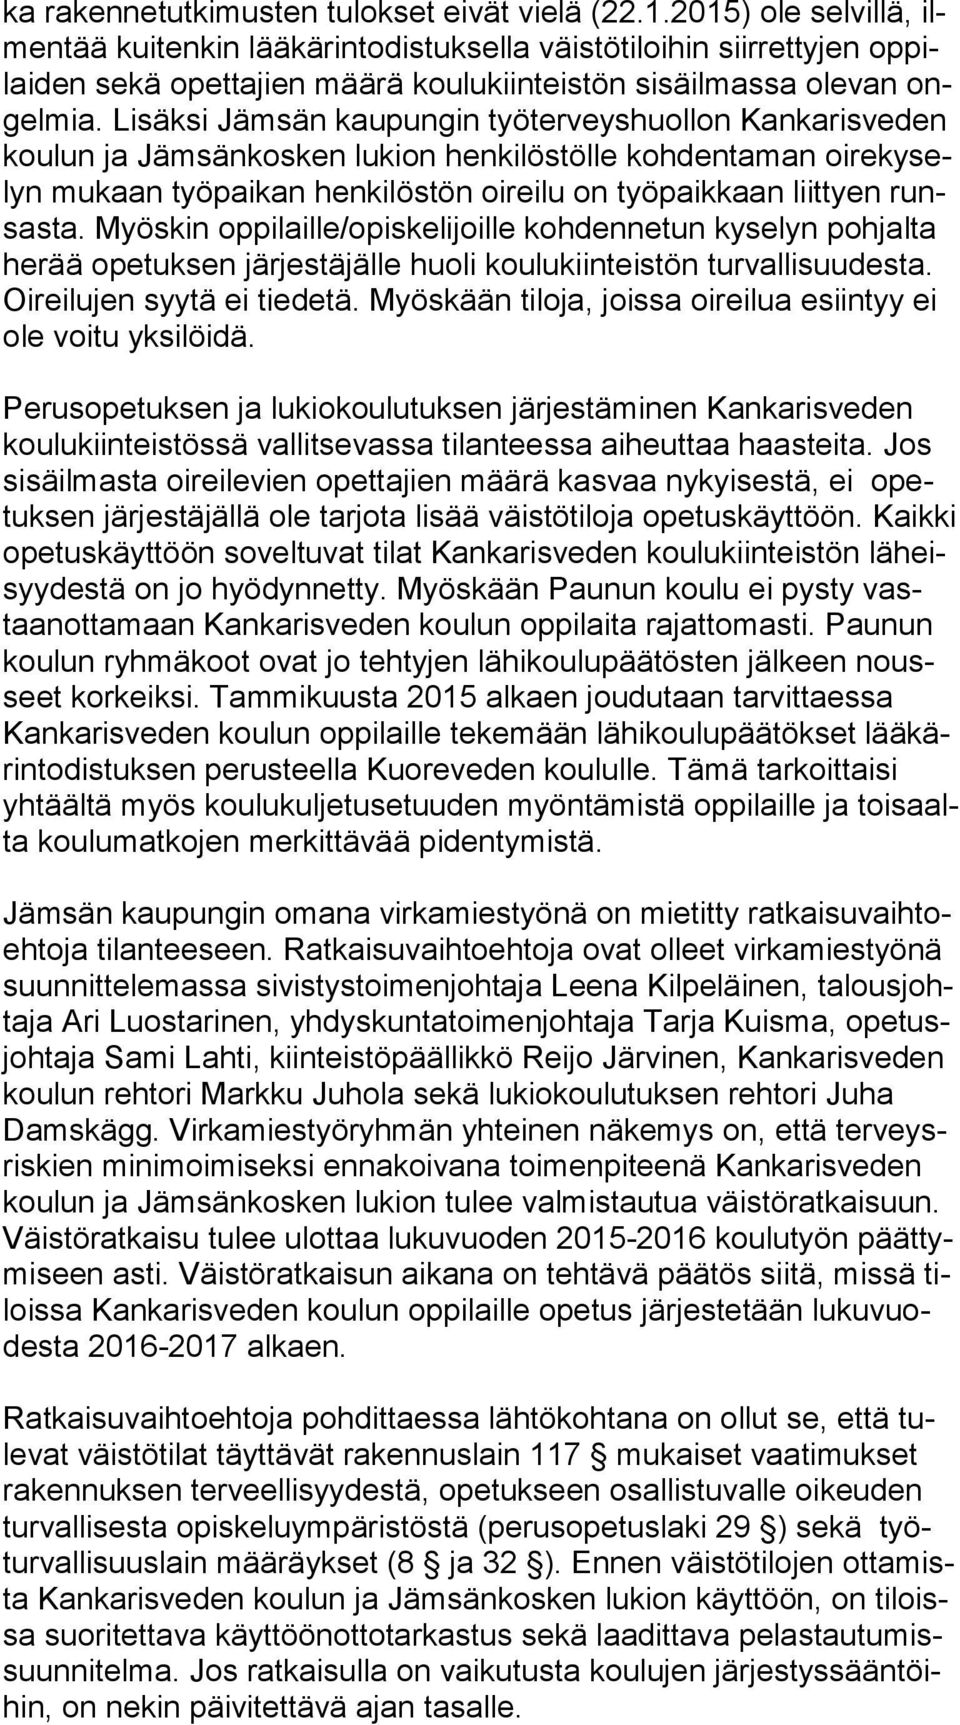 Lisäksi Jämsän kaupungin työterveyshuollon Kankarisveden kou lun ja Jämsänkosken lukion henkilöstölle kohdentaman oi re ky selyn mukaan työpaikan henkilöstön oireilu on työpaikkaan liittyen runsas ta.